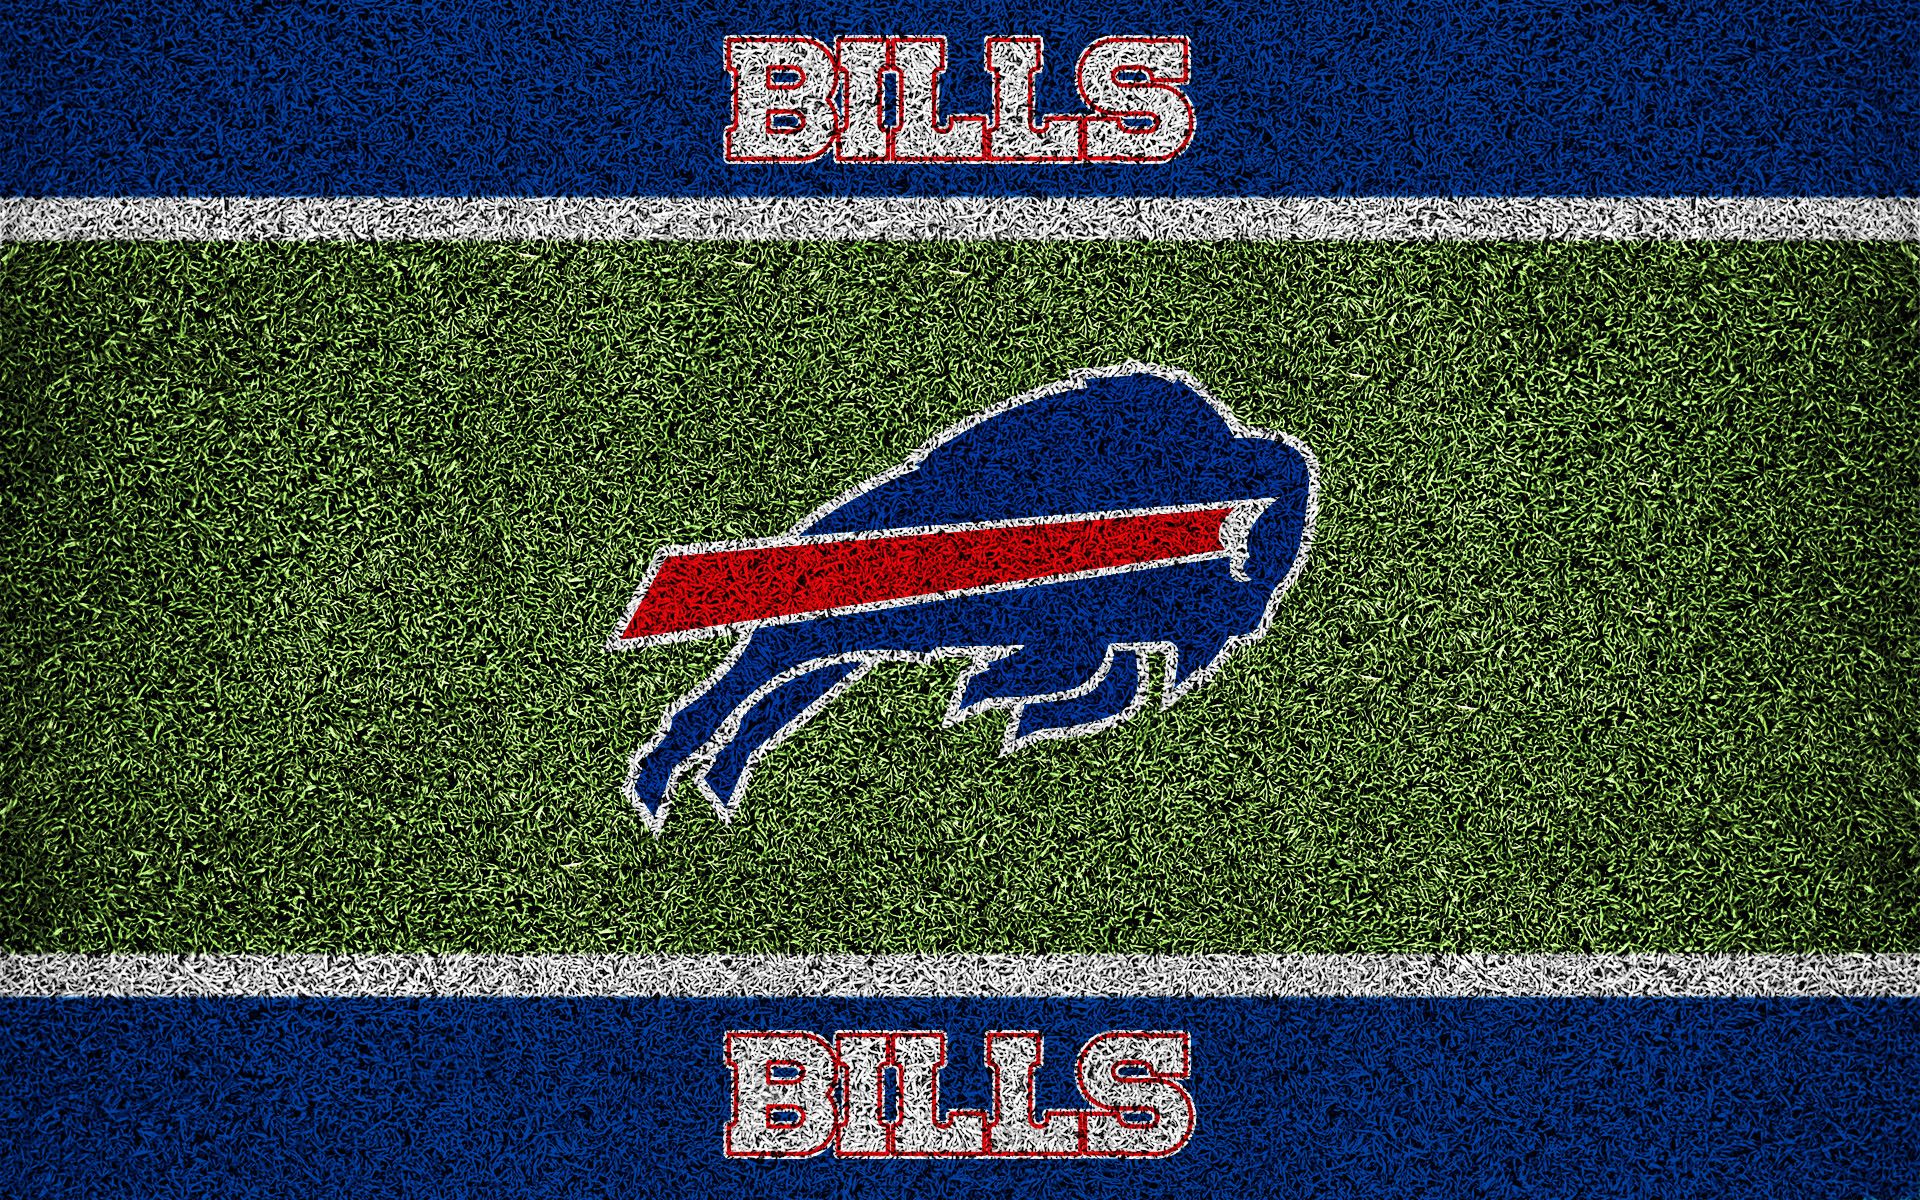 Buffalo Bills 2018 Wallpaper